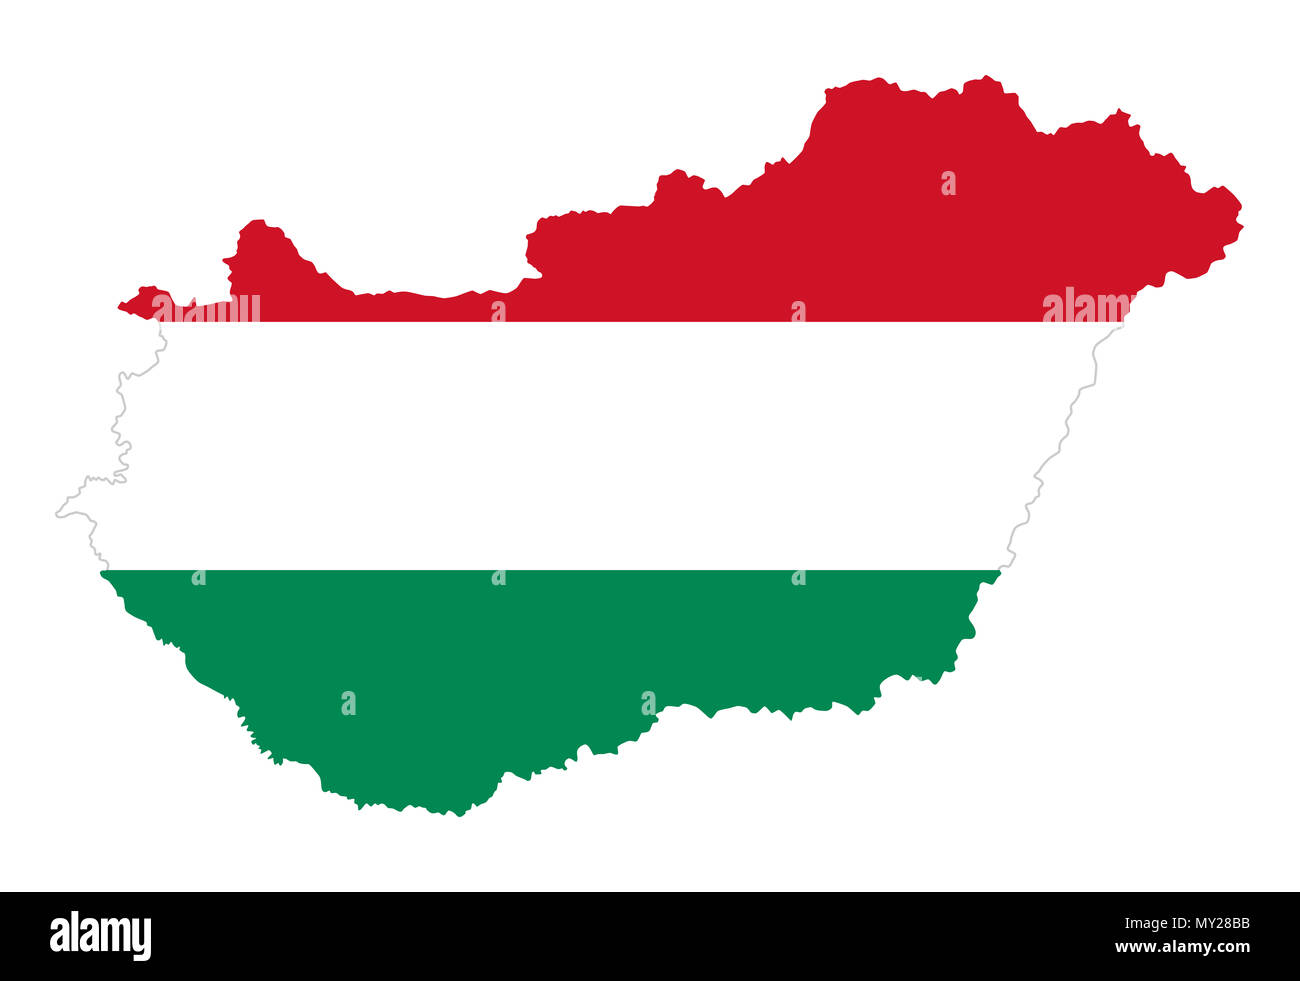 Pavillon de la Hongrie en pays d'ossature. Tricolore hongrois, barre horizontale rouge, vert et blanc, rayures, dans le pays. Etat dans l'Europe centrale. Banque D'Images